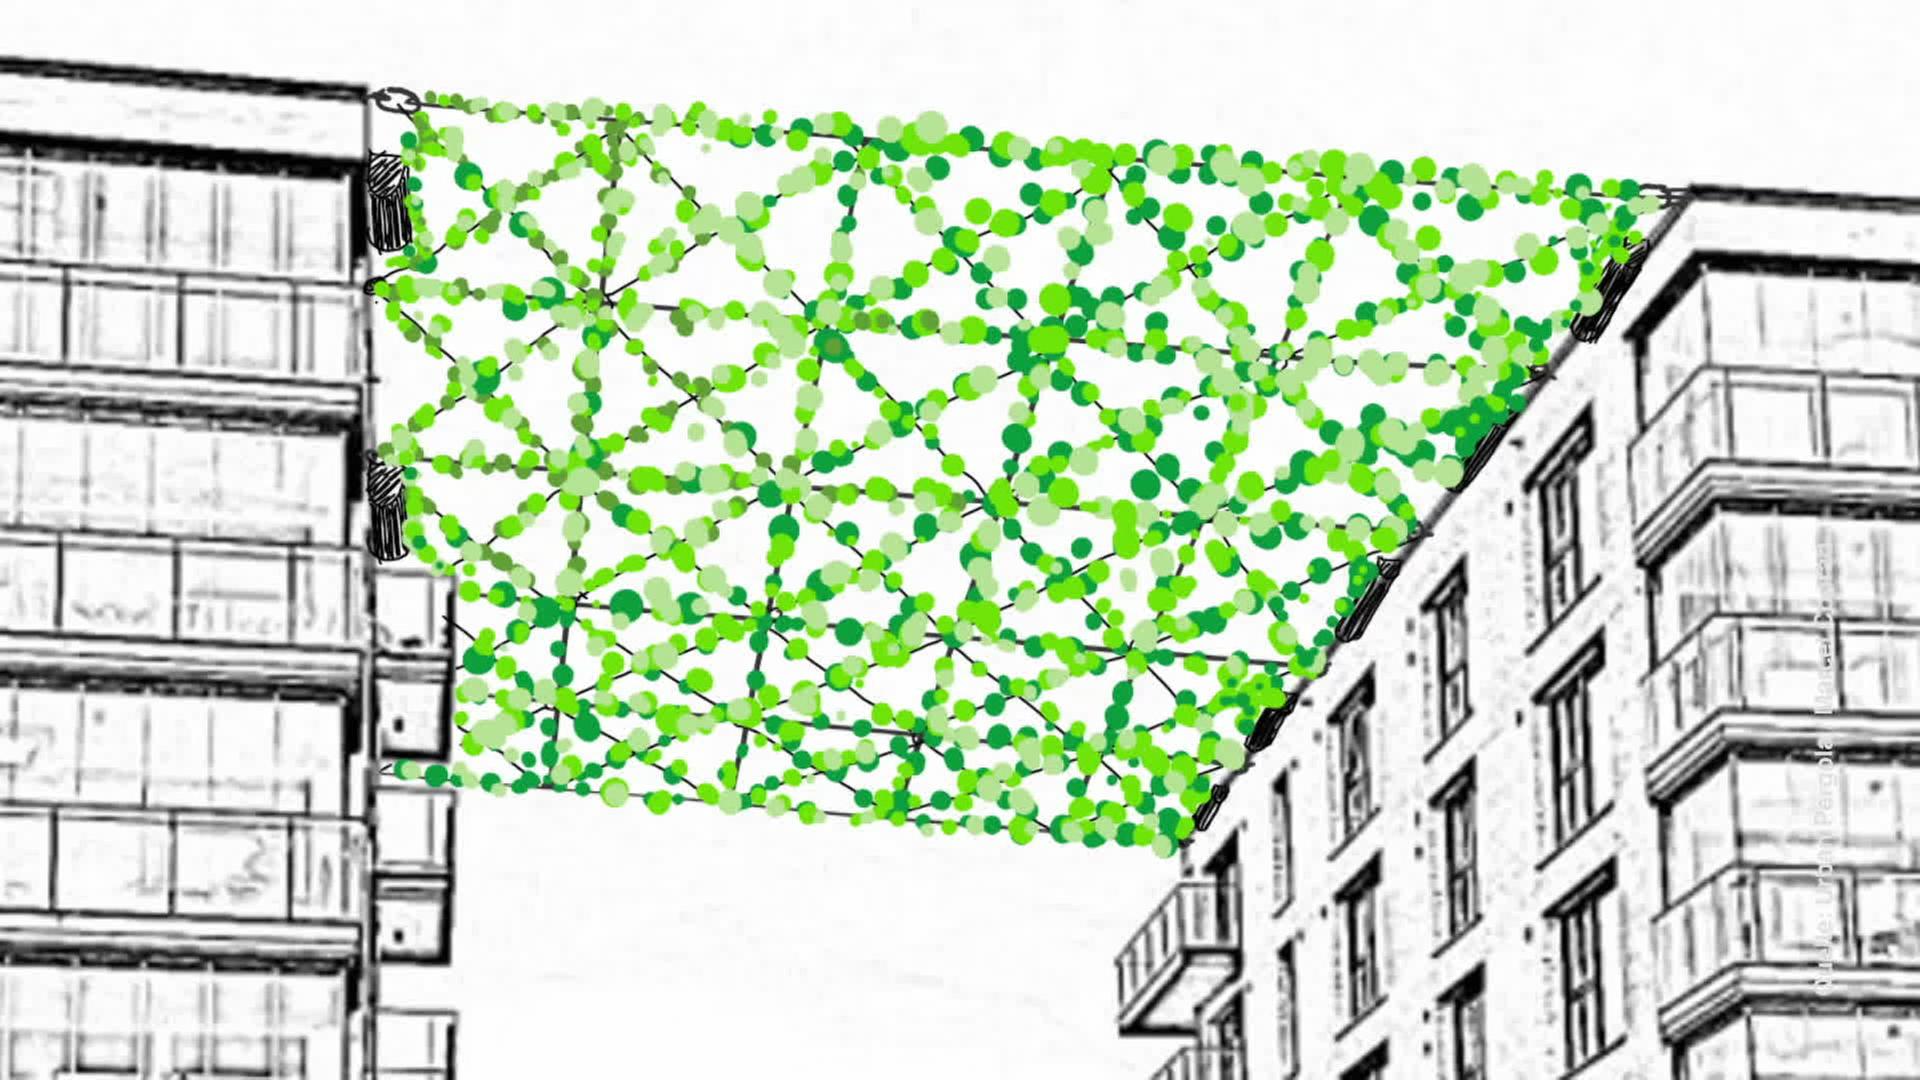 Grafik/Zeichnung: Begrünte Netze sind zwischen Häuser gespannt